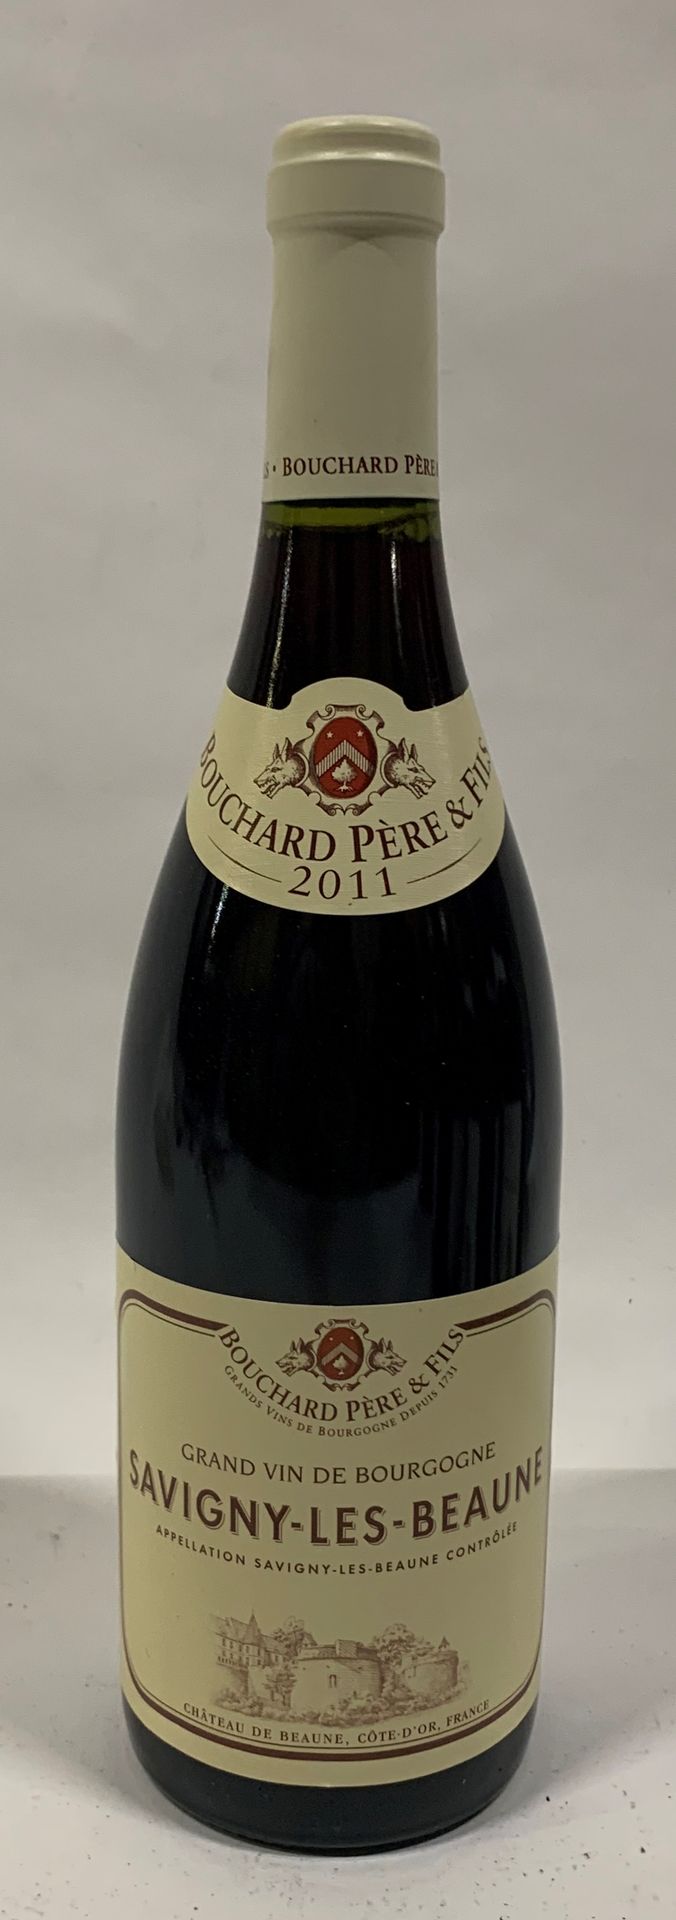 Null ● SAVIGNY-LÈS-BEAUNE | Bouchard Père & Fils, 2011 

6 bouteilles 

Réf. 50